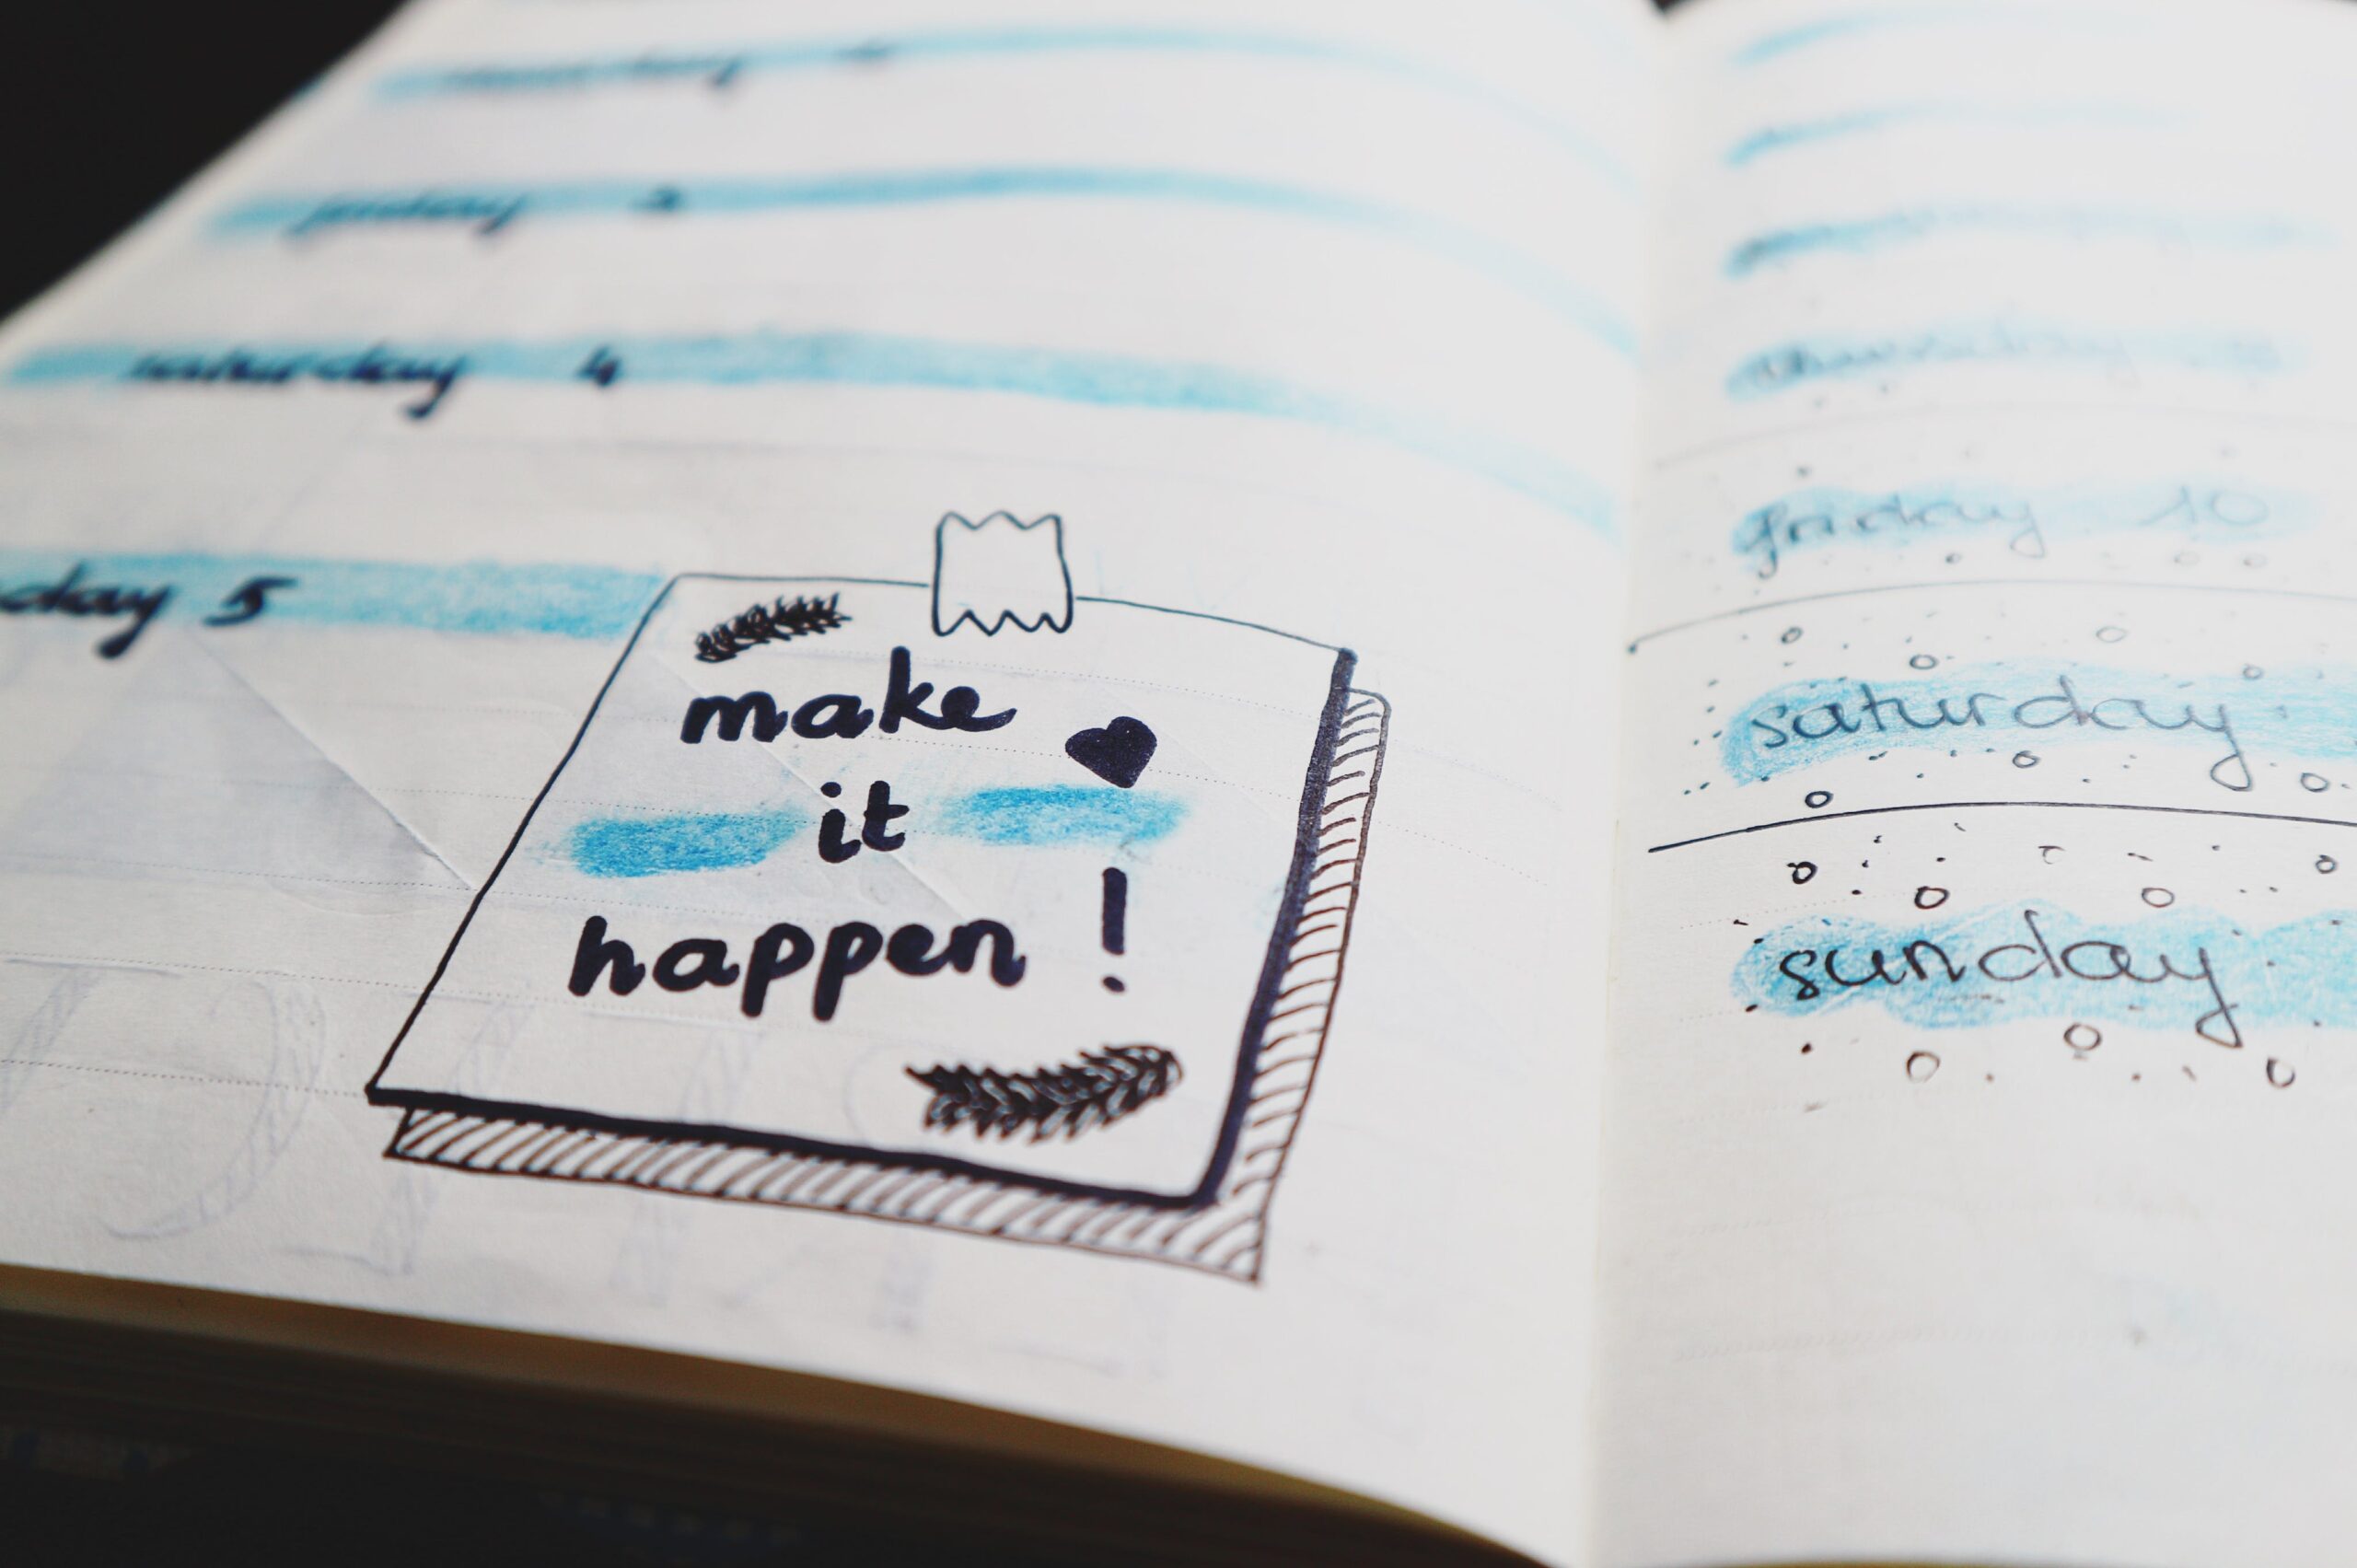 "Make it happen" written on a journal. 